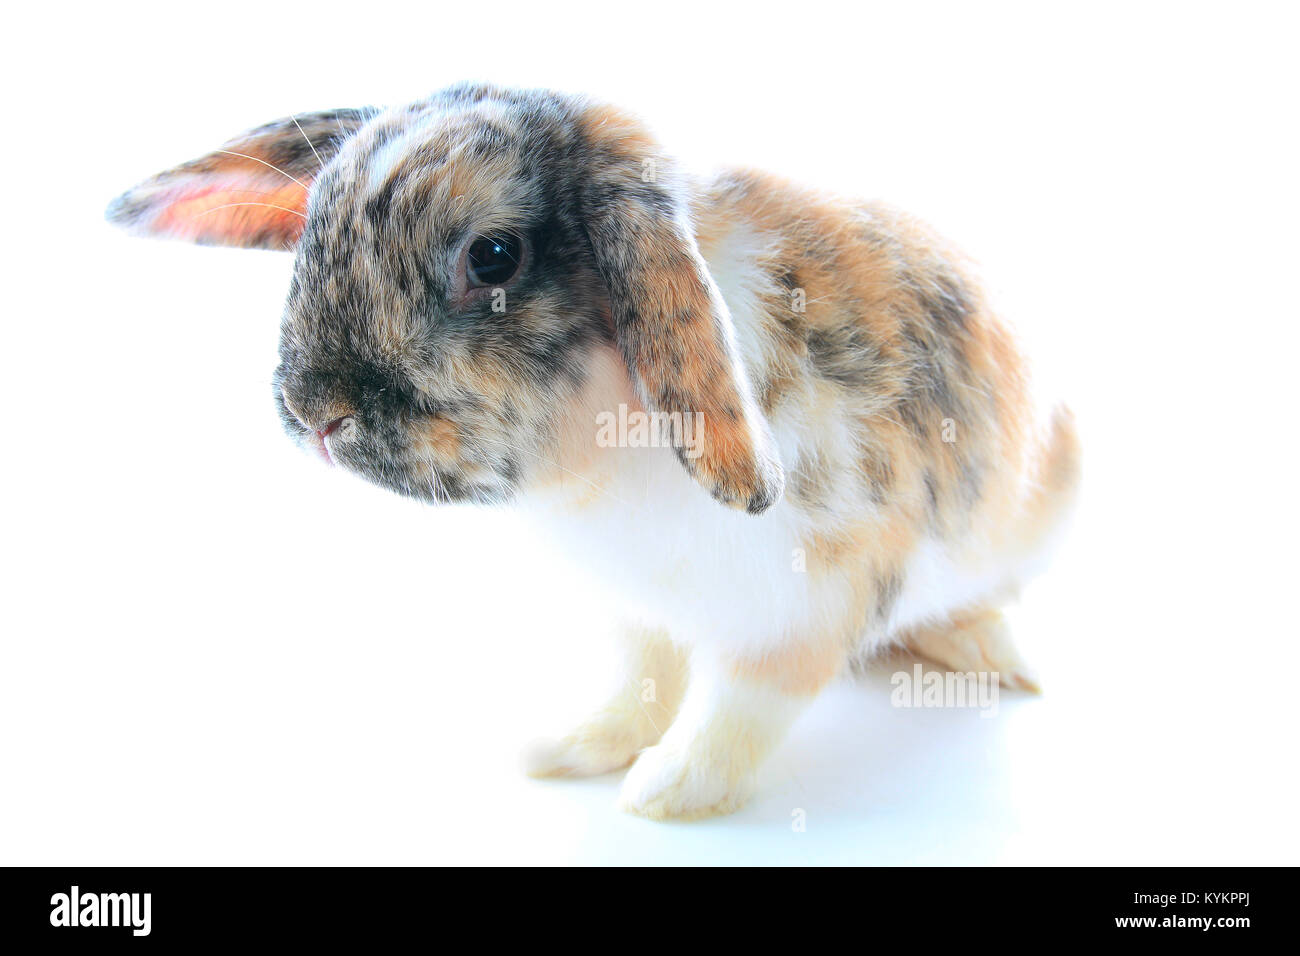 Rare il colore di coniglio. Orange black white dwarf lop widder bunny con speciale configurazione tricolore. Modelli di coniglio. Orange fox rex tricolore bianco nero rotto Foto Stock